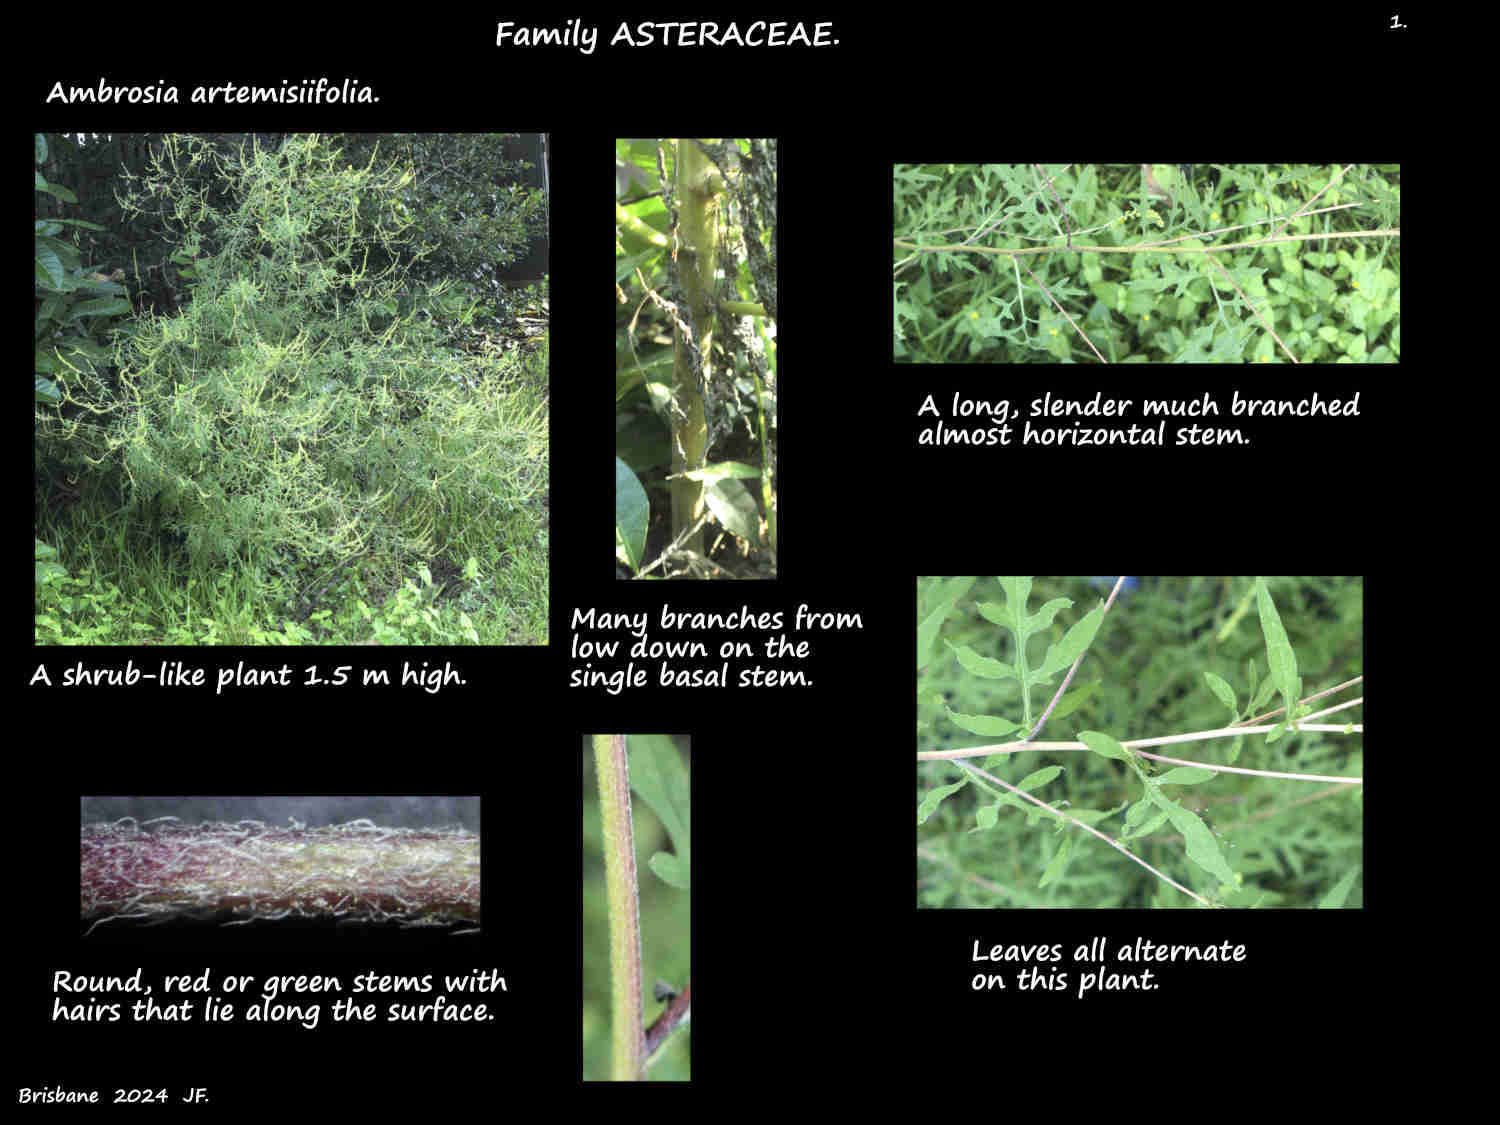 1 An Ambrosia artemisiifolia plant